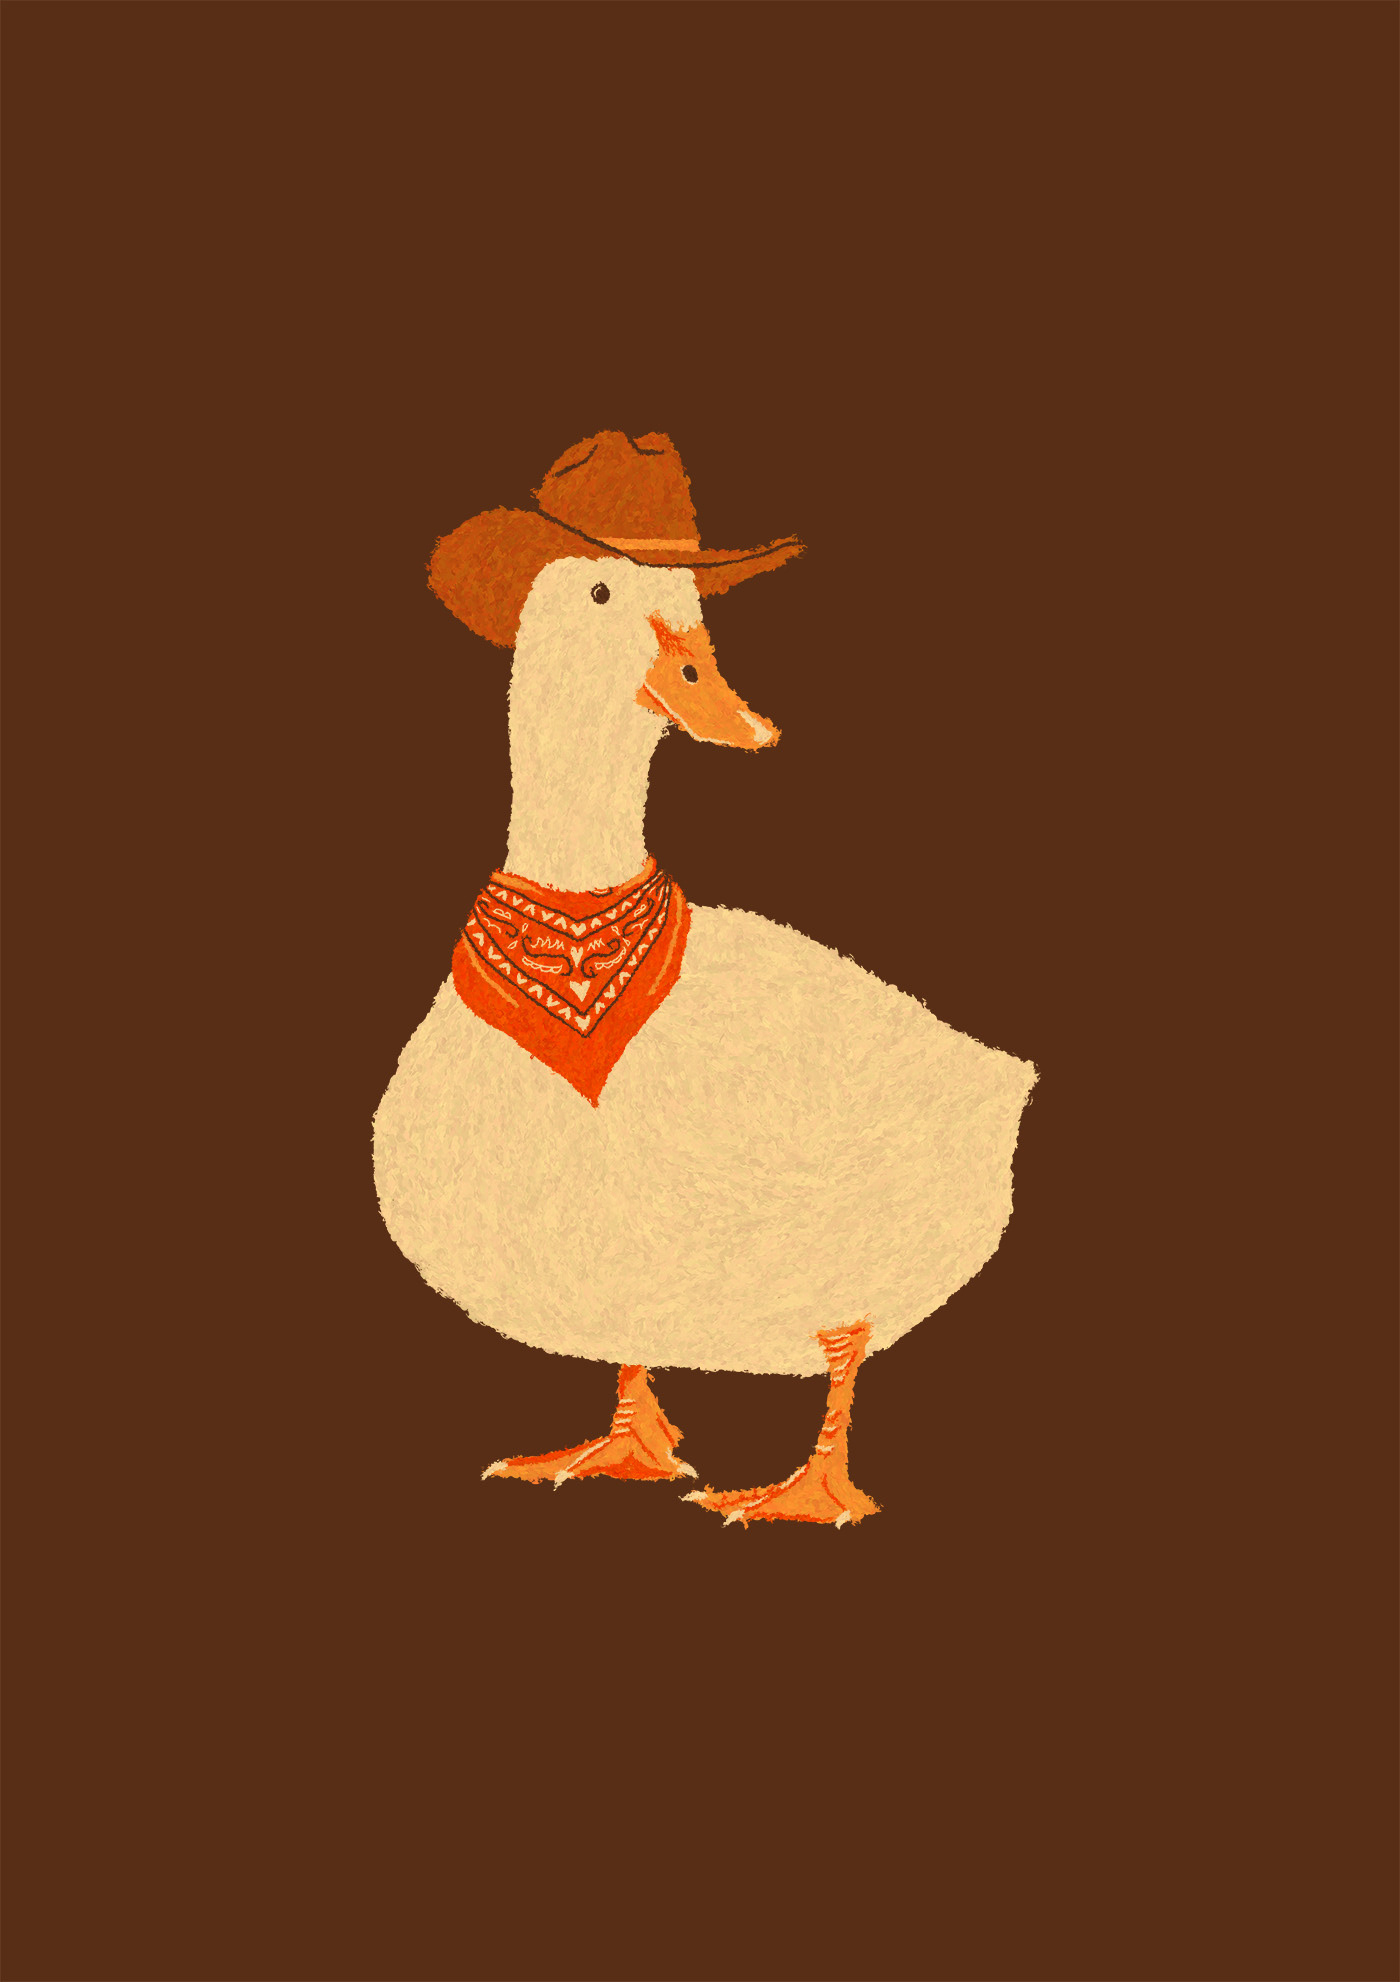 cowboy duck stetson cowboy hat Bandana western wild west farm animals Yeehaw cowgirl